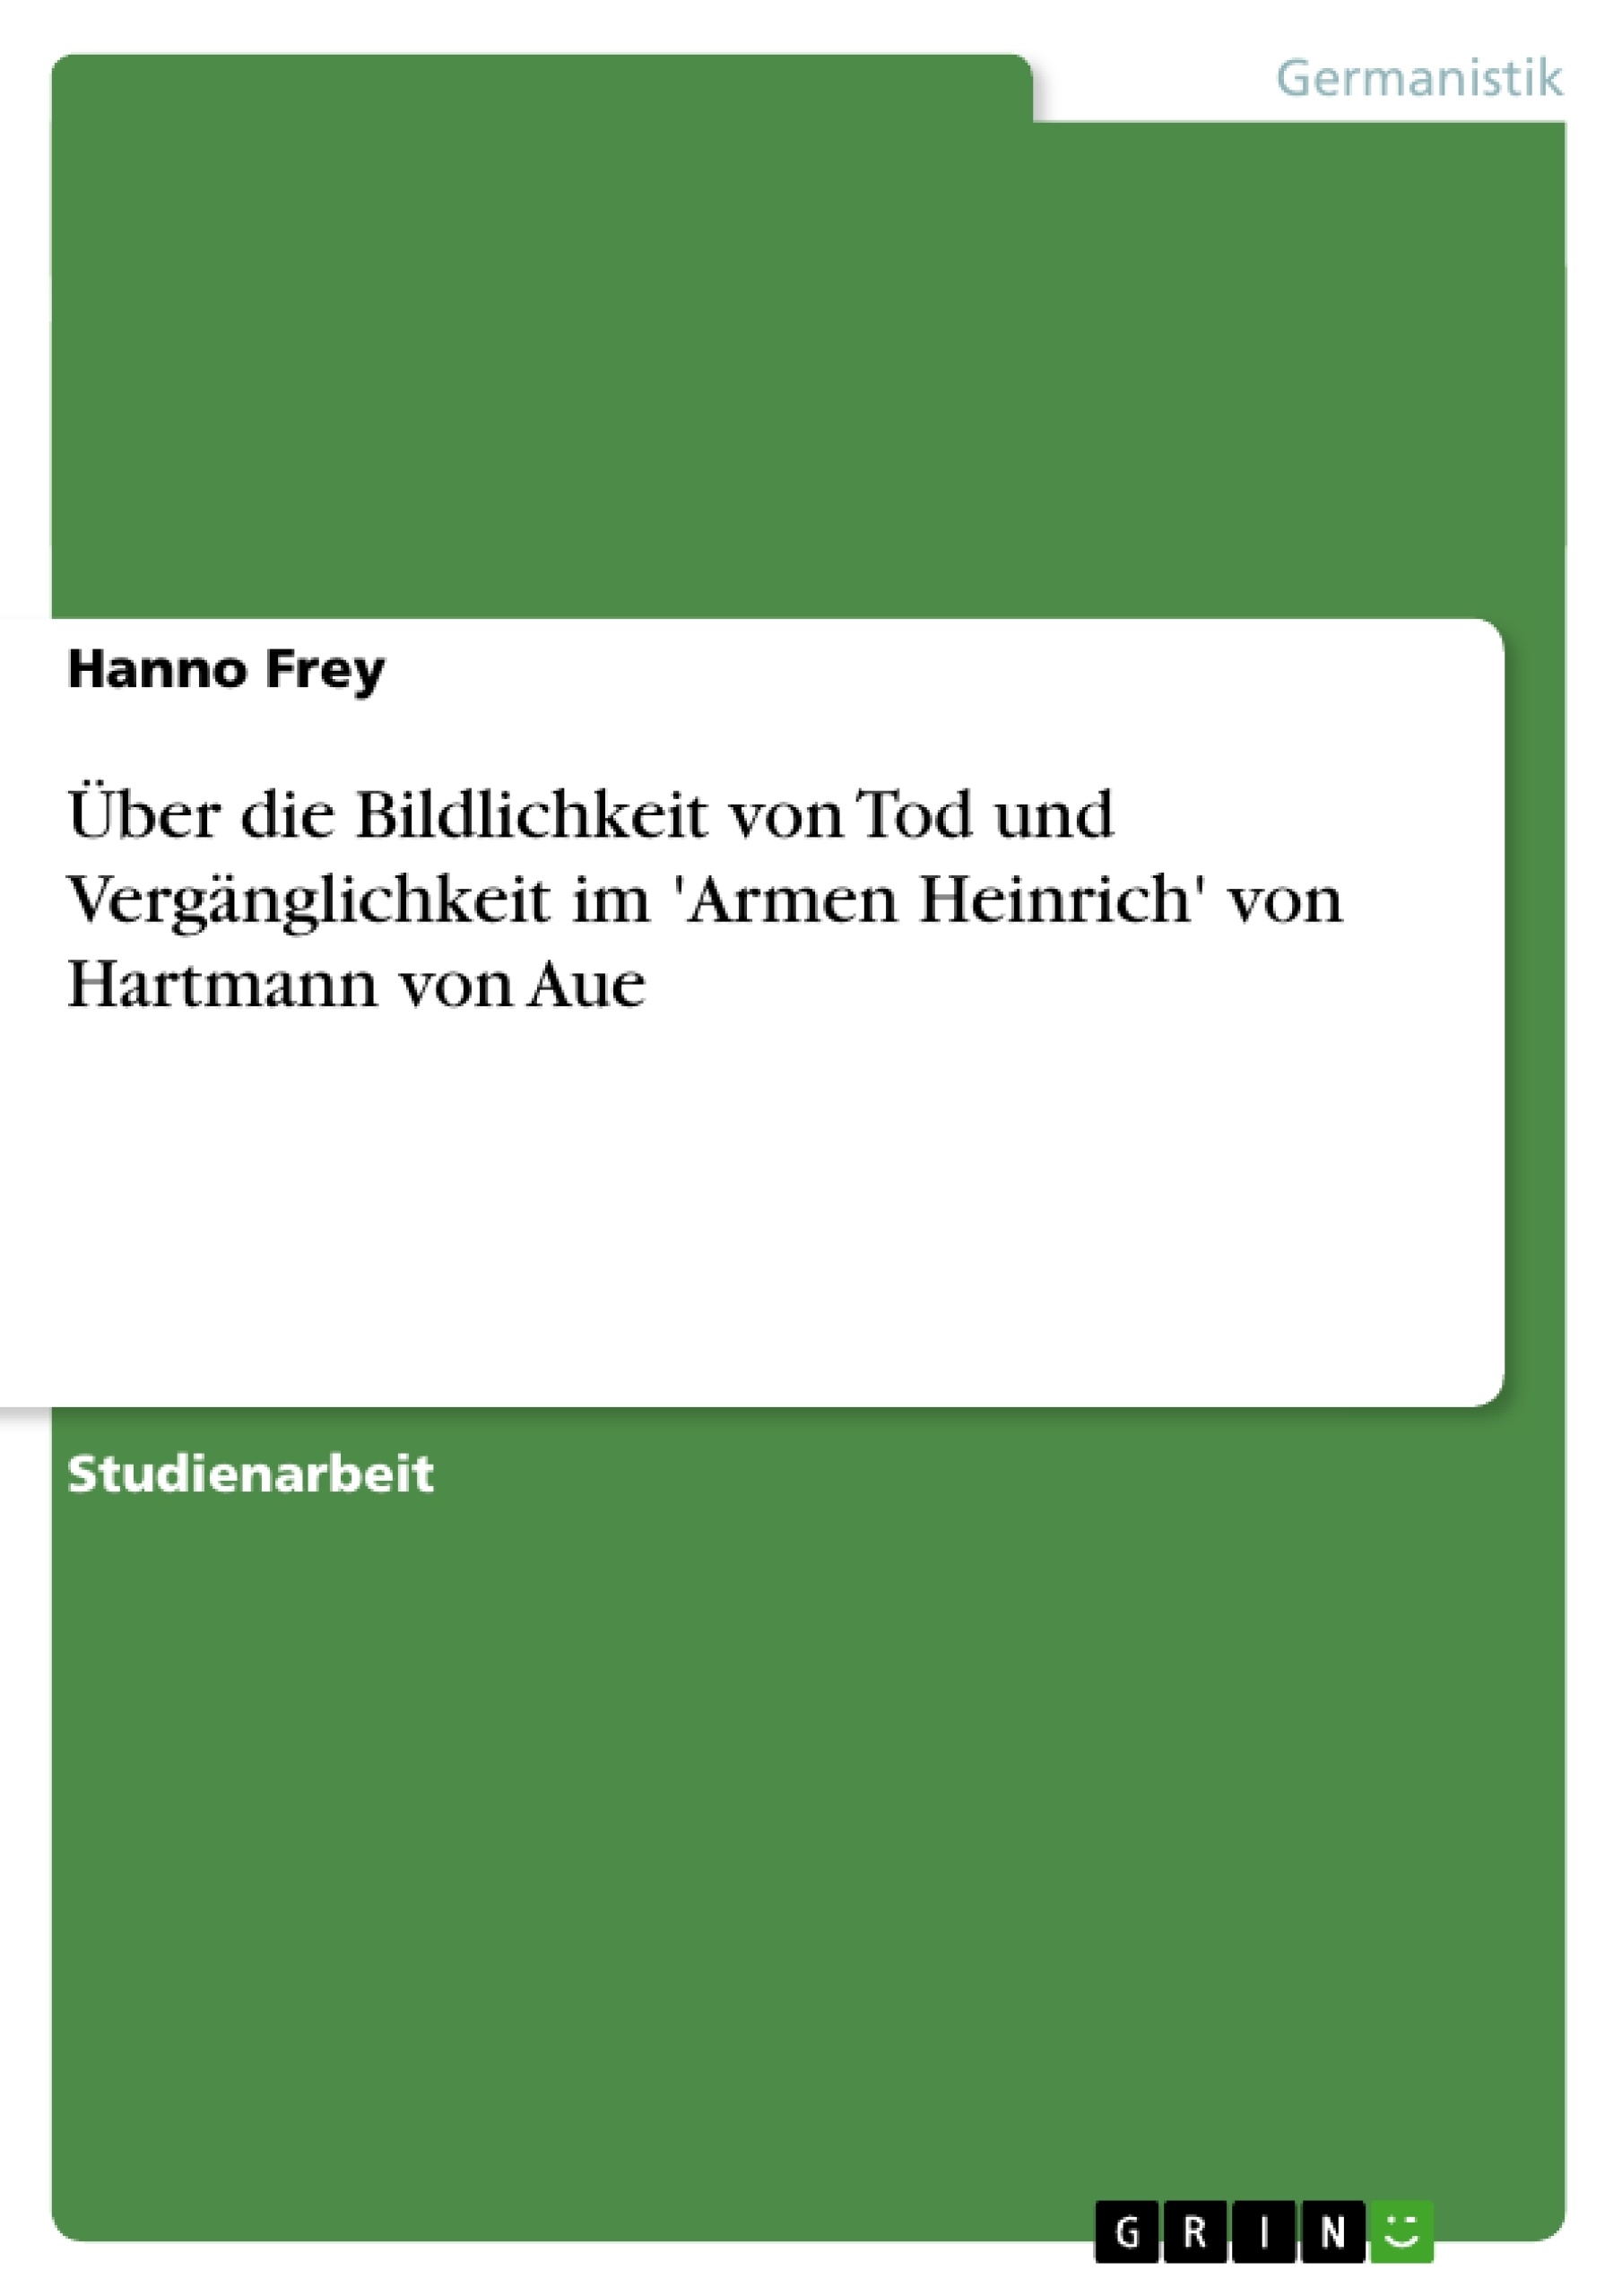 Título: Über die Bildlichkeit von Tod und Vergänglichkeit im 'Armen Heinrich' von Hartmann von Aue